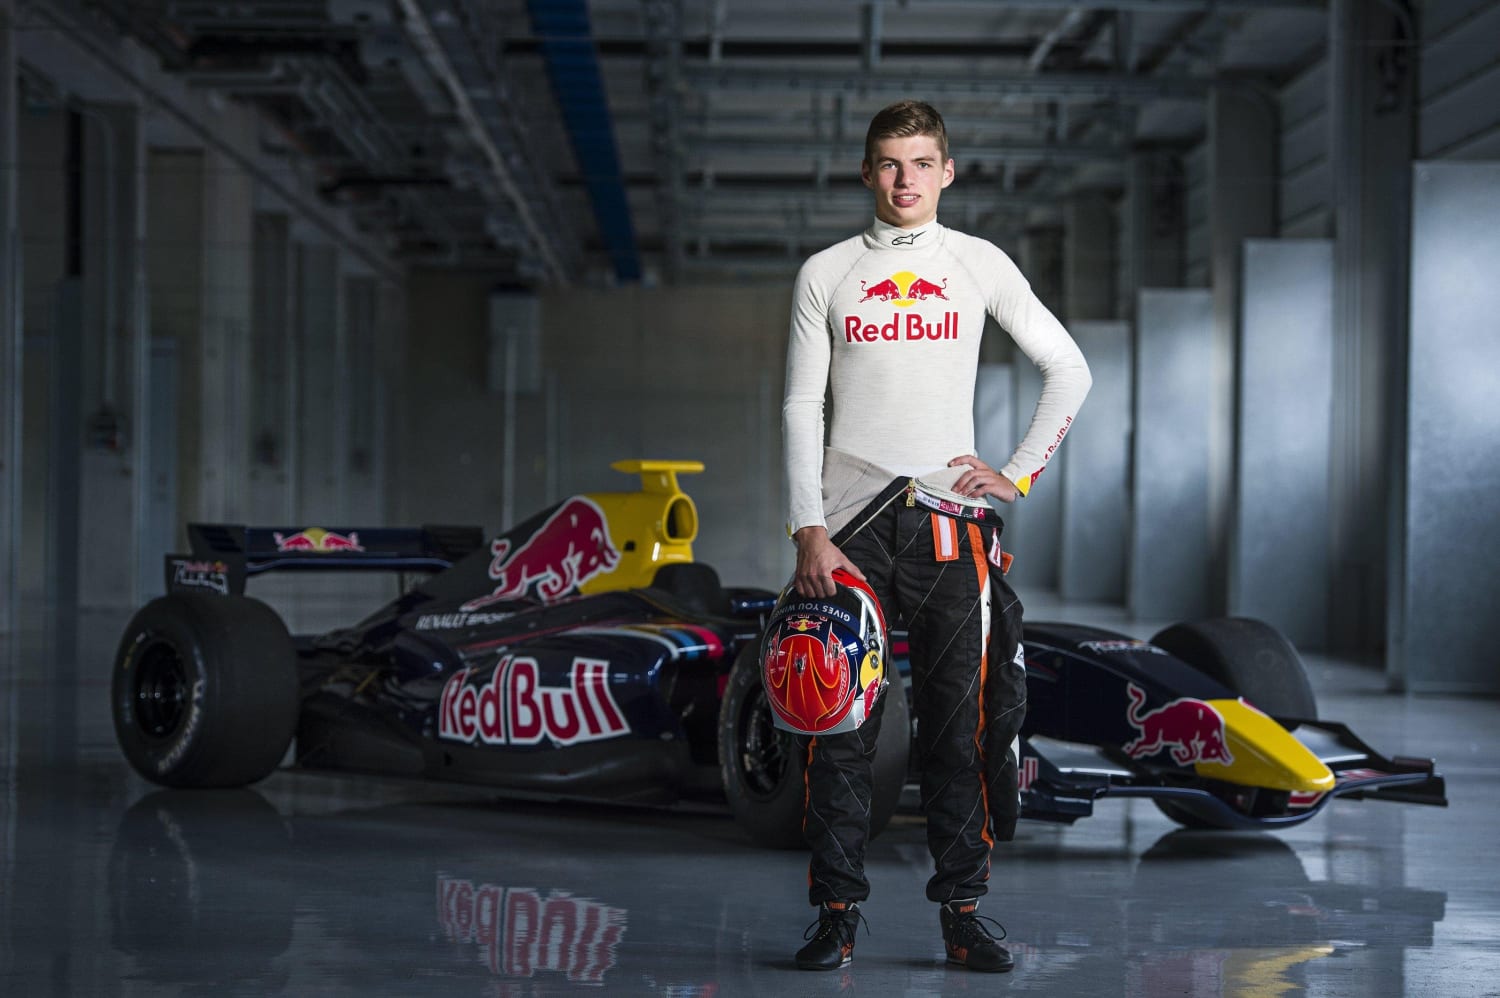 Schurend Evaluatie Bomen planten Max Verstappen Red Bull Junior Team